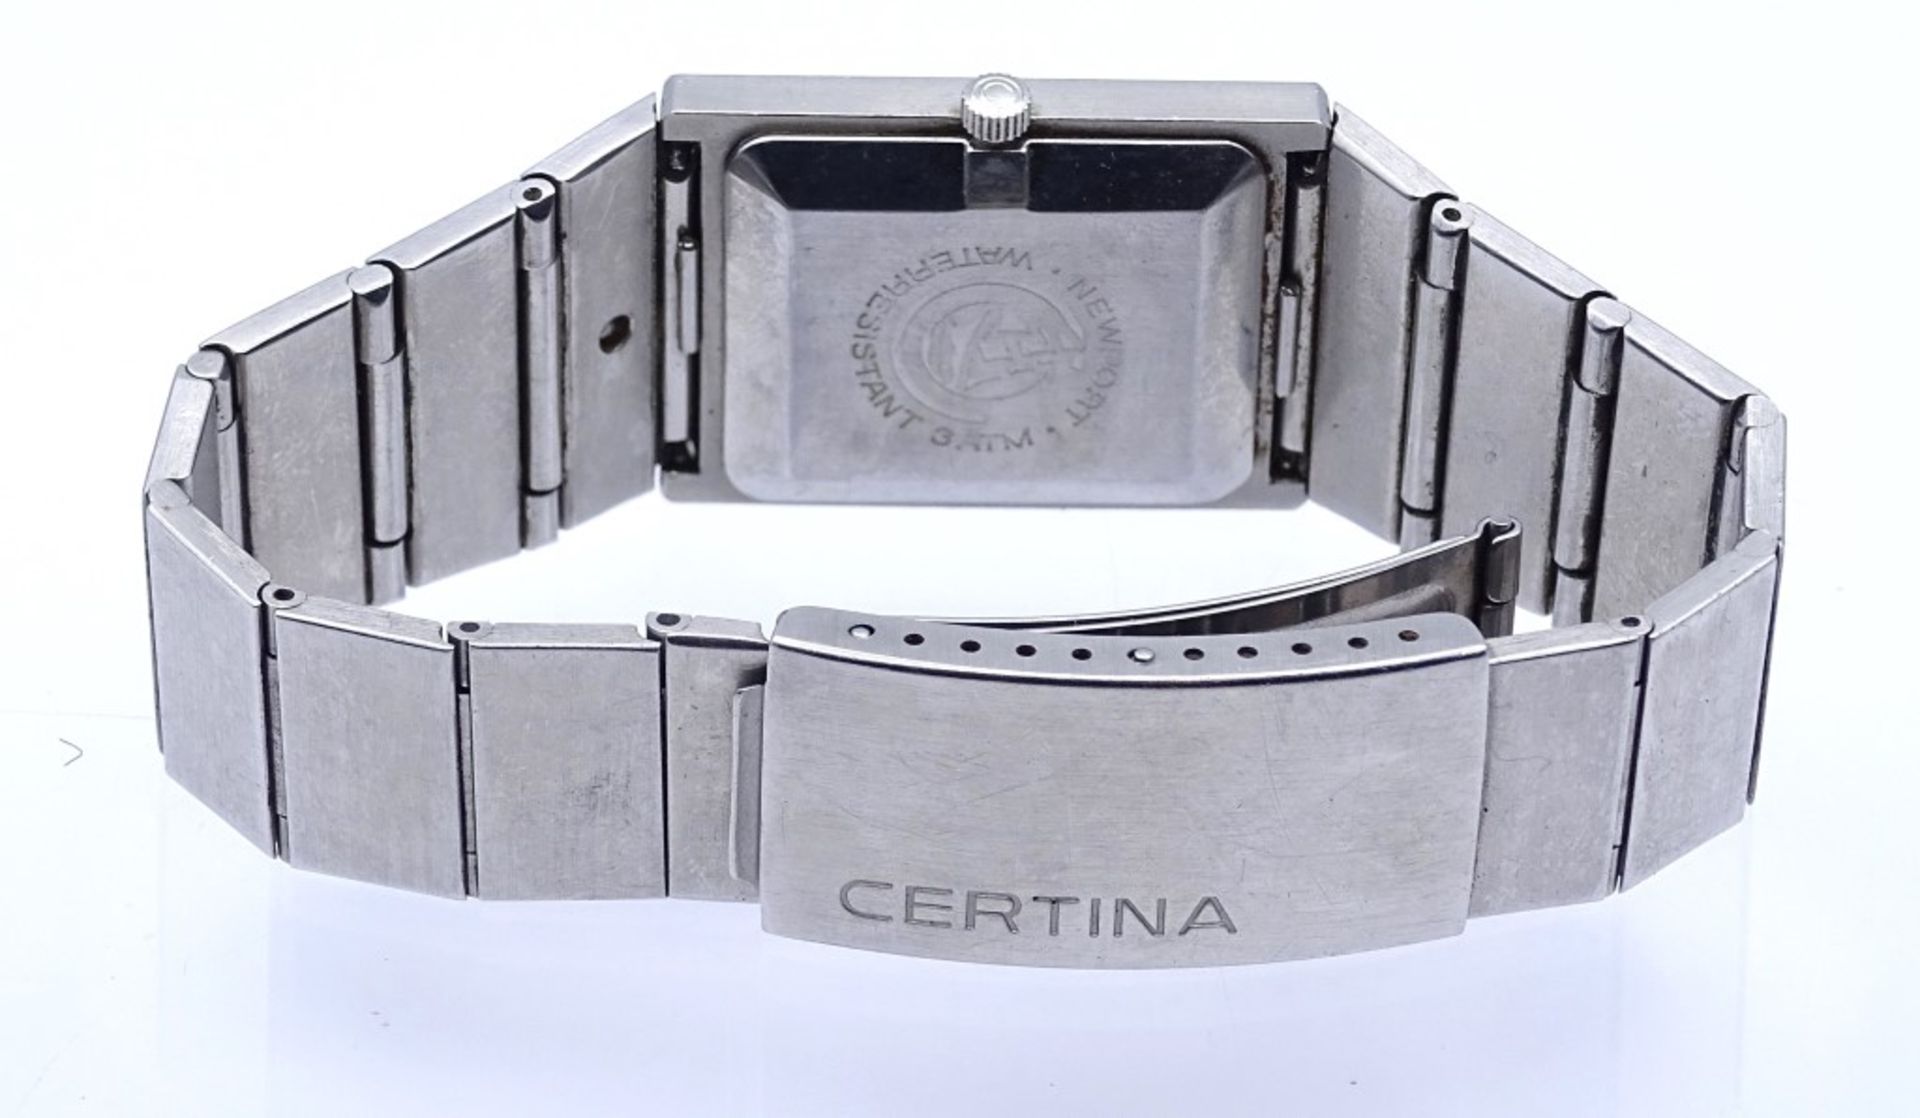 Armbanduhr "Certina",Quartz,Schweiz,Edelstahl,Gehäuse 26x33mm, Saphirglas,Funktion nicht überprüft - Bild 4 aus 5